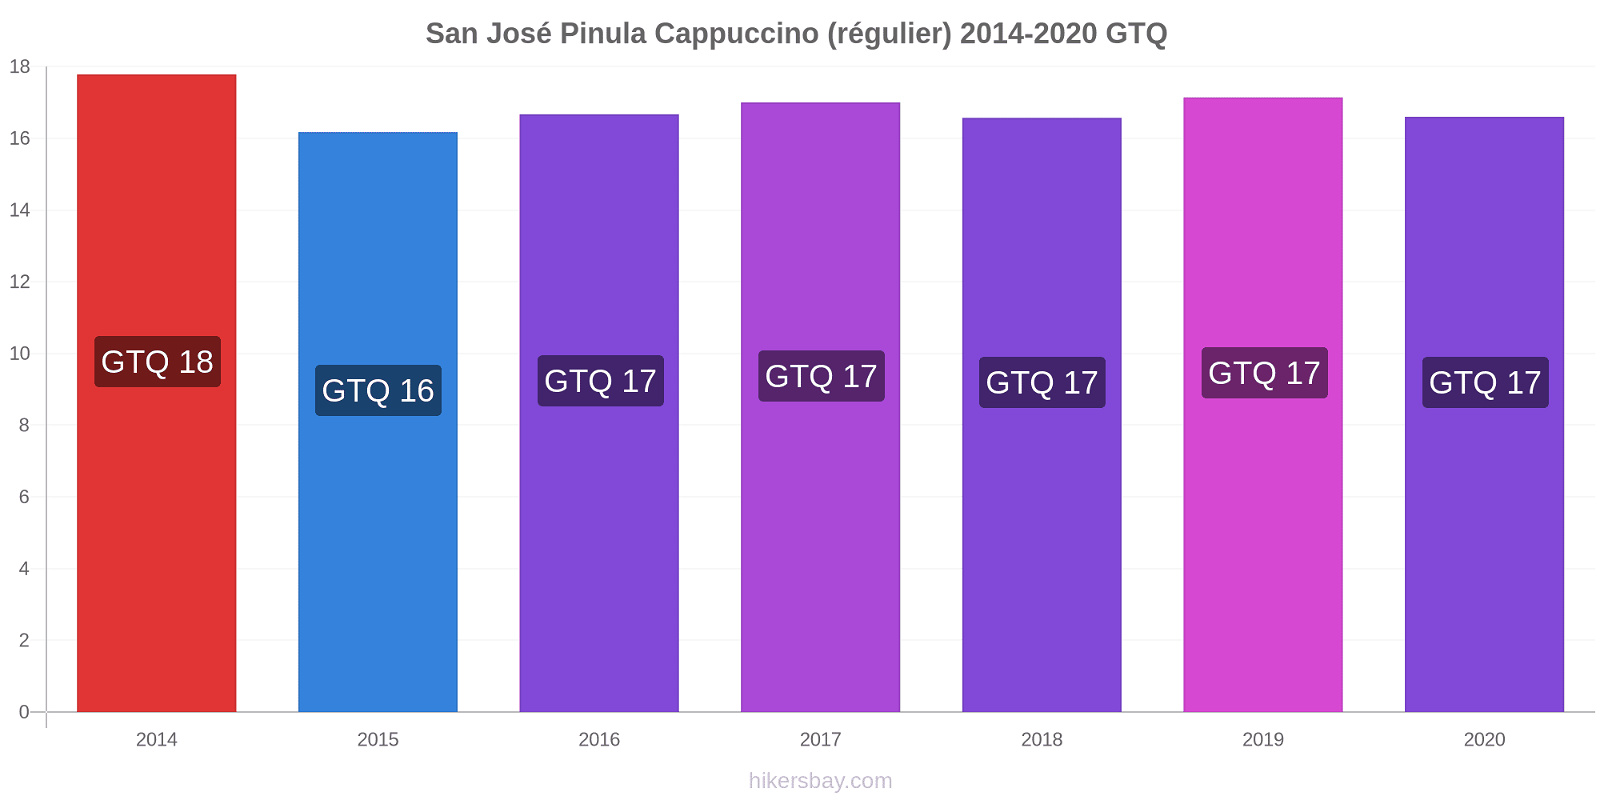 San José Pinula changements de prix Cappuccino (régulier) hikersbay.com